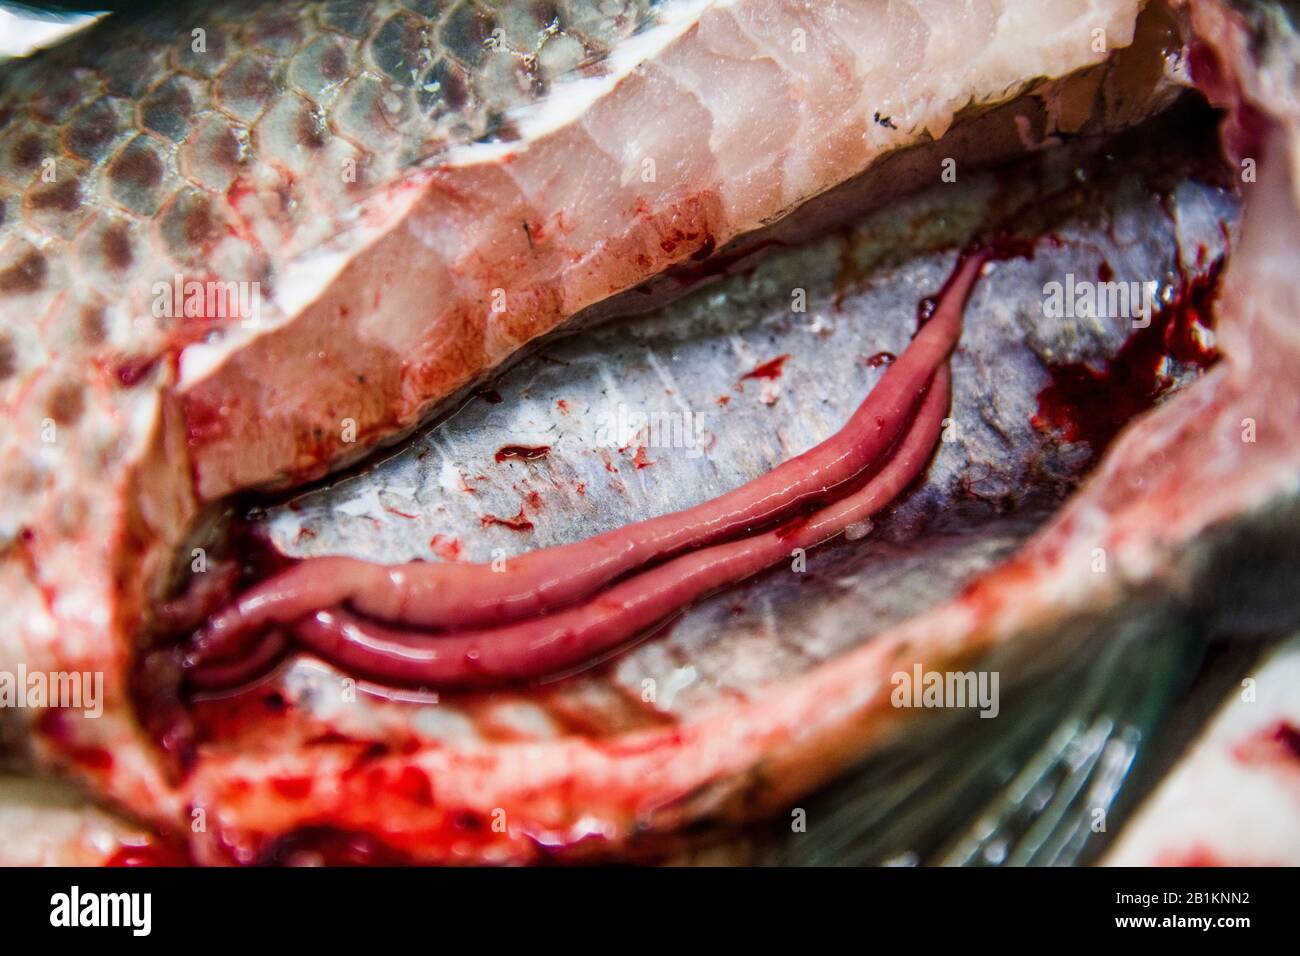 Fischgesundheitsmanagement ist ein Begriff aus der Aquakultur, der Fischerkrankungen vorbeugen soll. Anatomie verschiedener Teile von Tilapia Fisch. Stockfoto